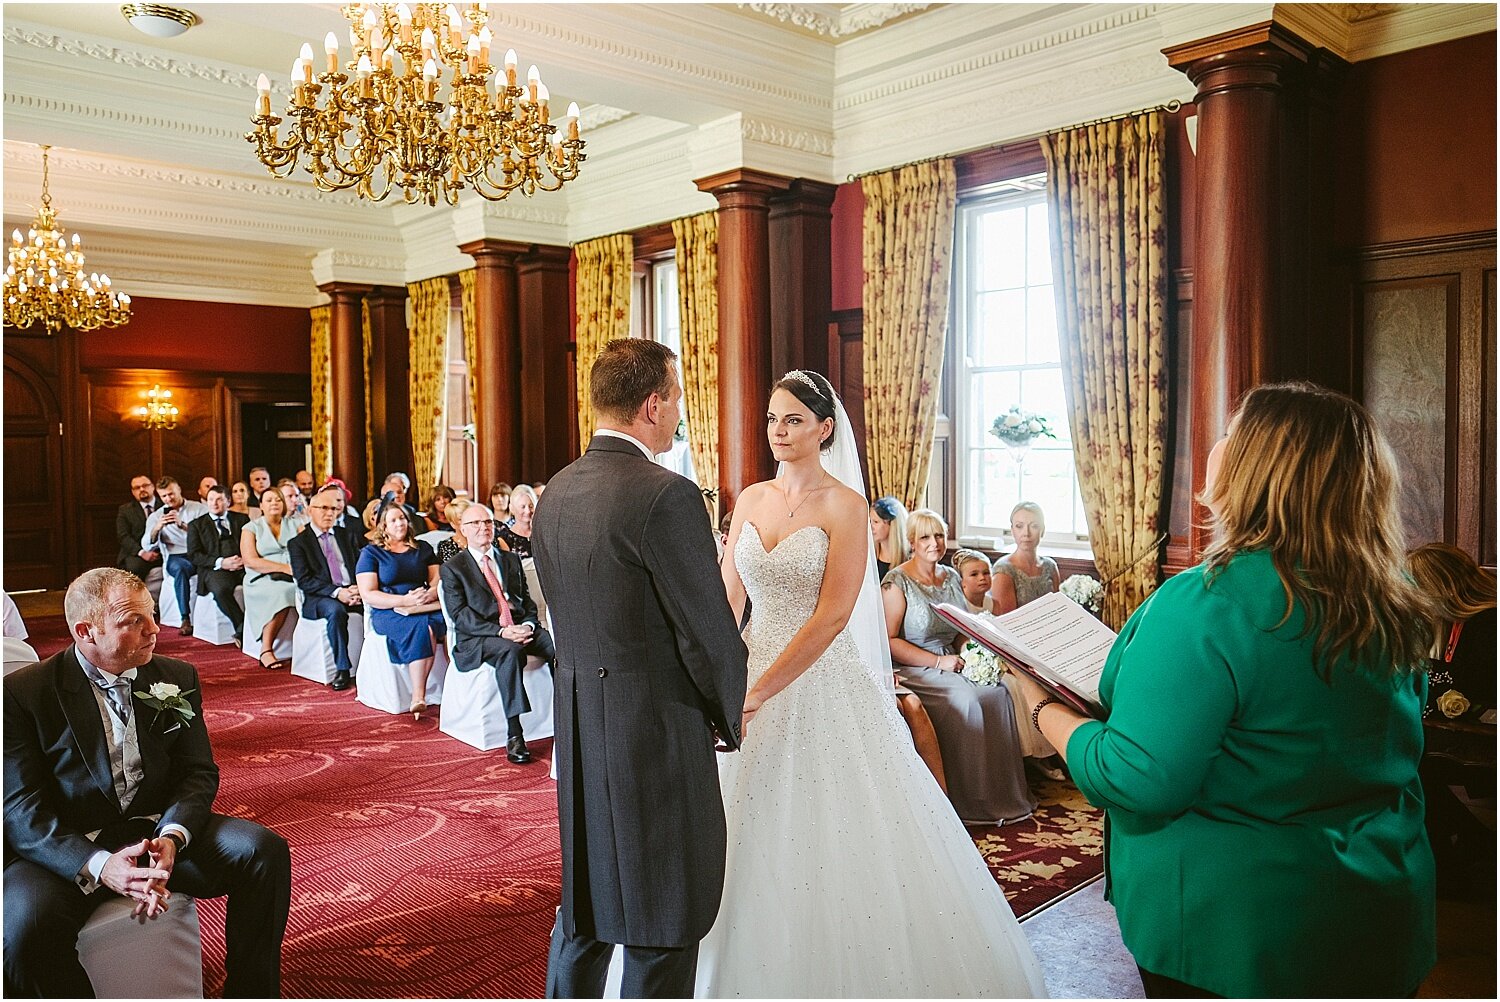 Doxford Hall wedding 031.jpg